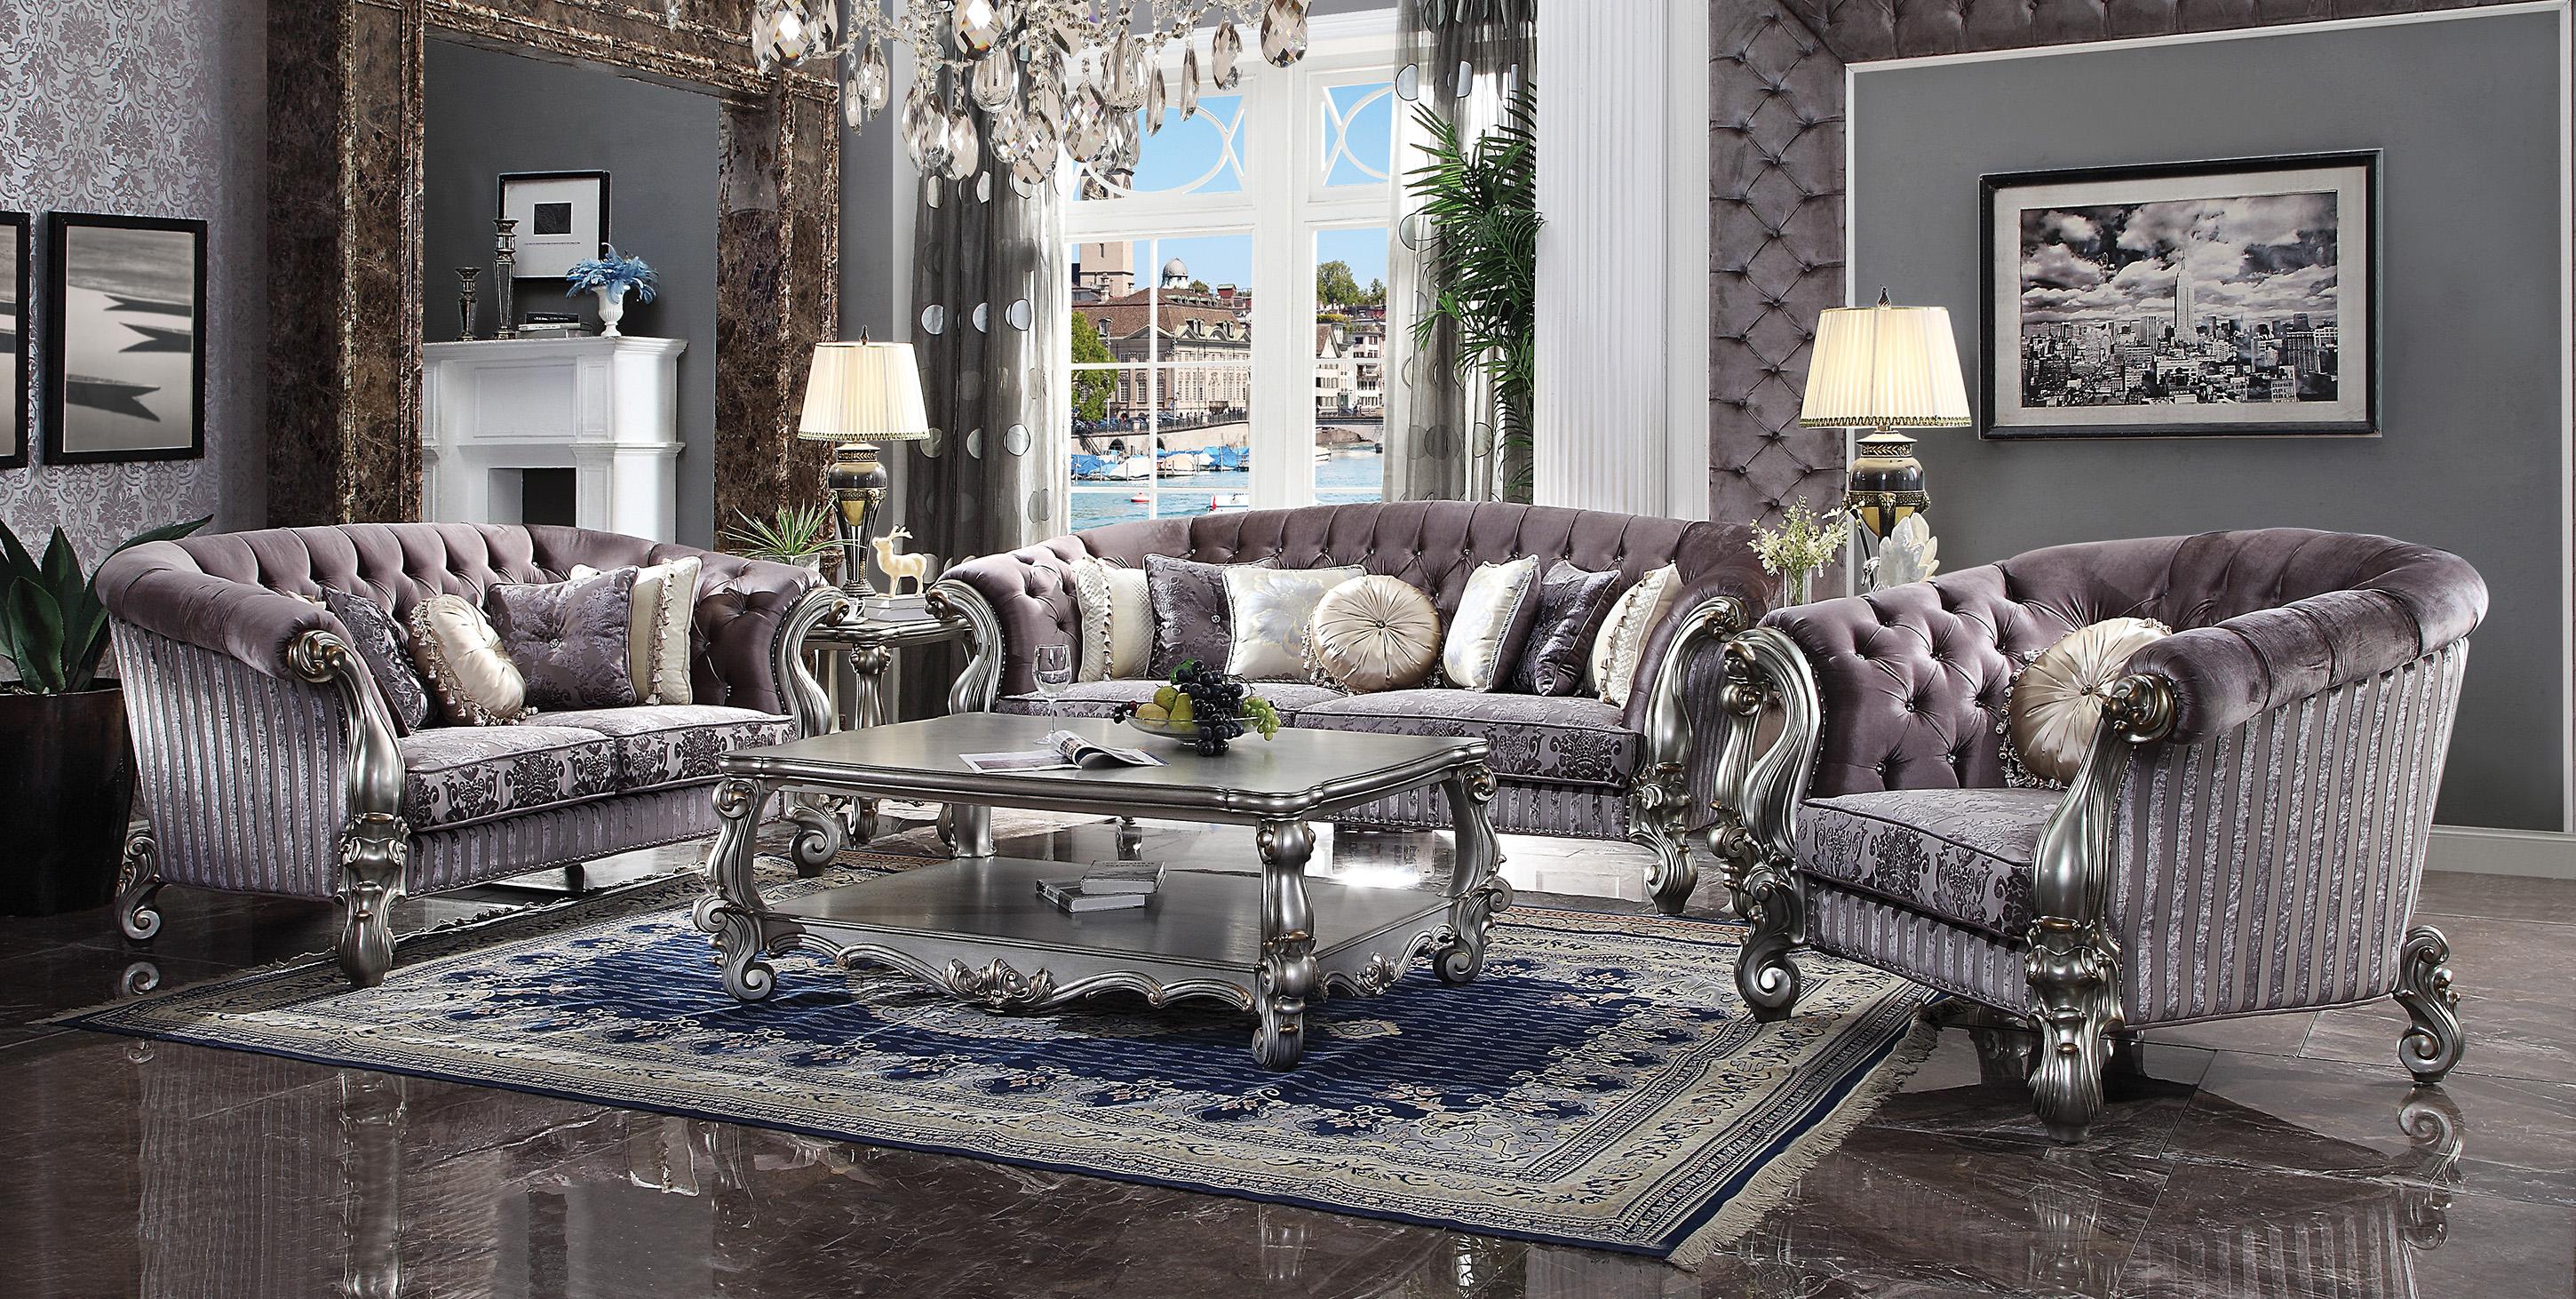 

        
Acme Furniture Versailles-56825 Sofa Set Platinum/Antique/Silver/Gray Velvet 0840412189012
